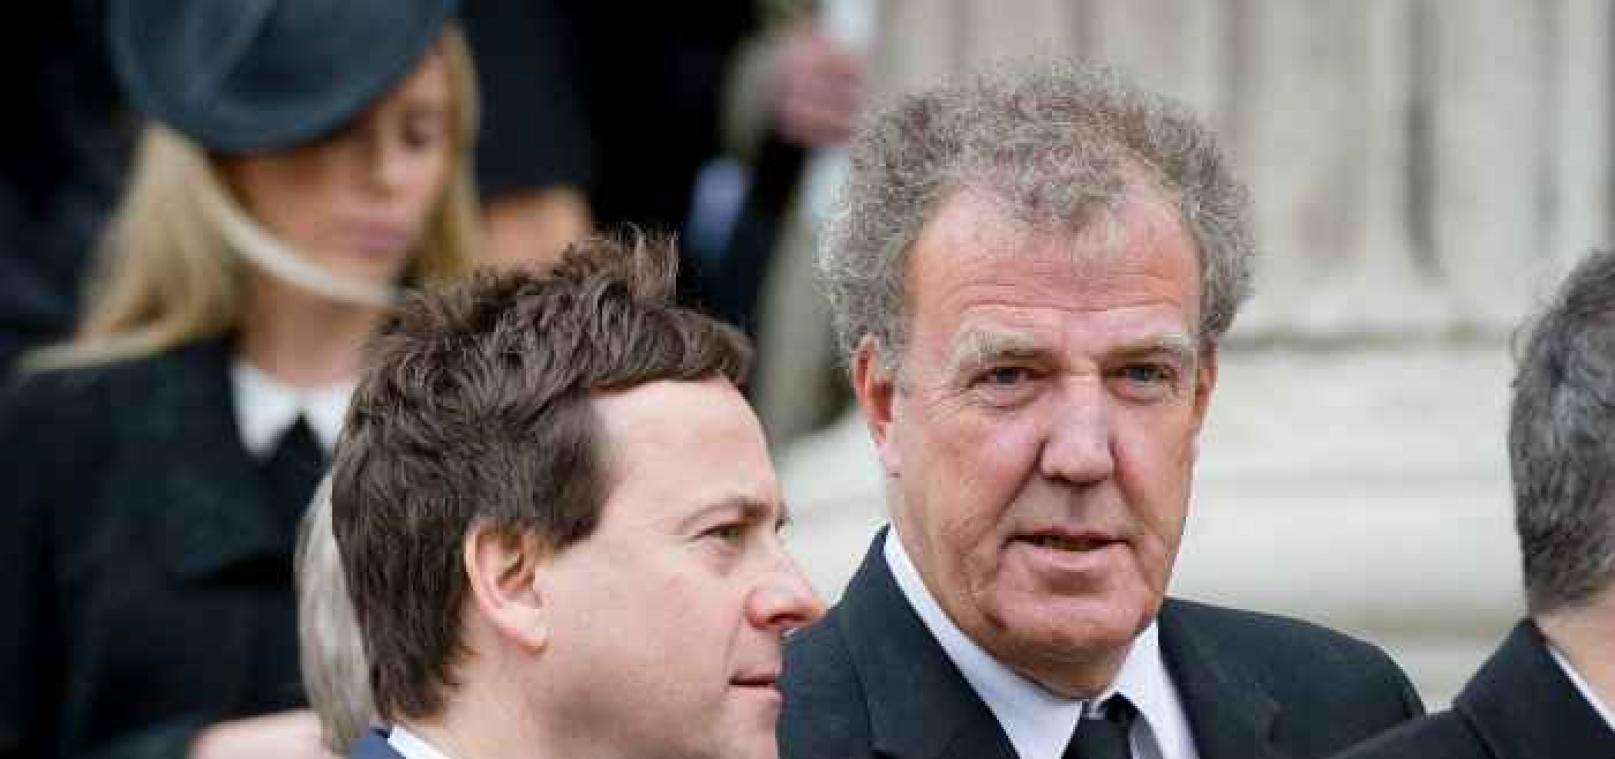 Top Gear-presentator Jeremy Clarkson smeekt in videoboodschap om vergiffenis